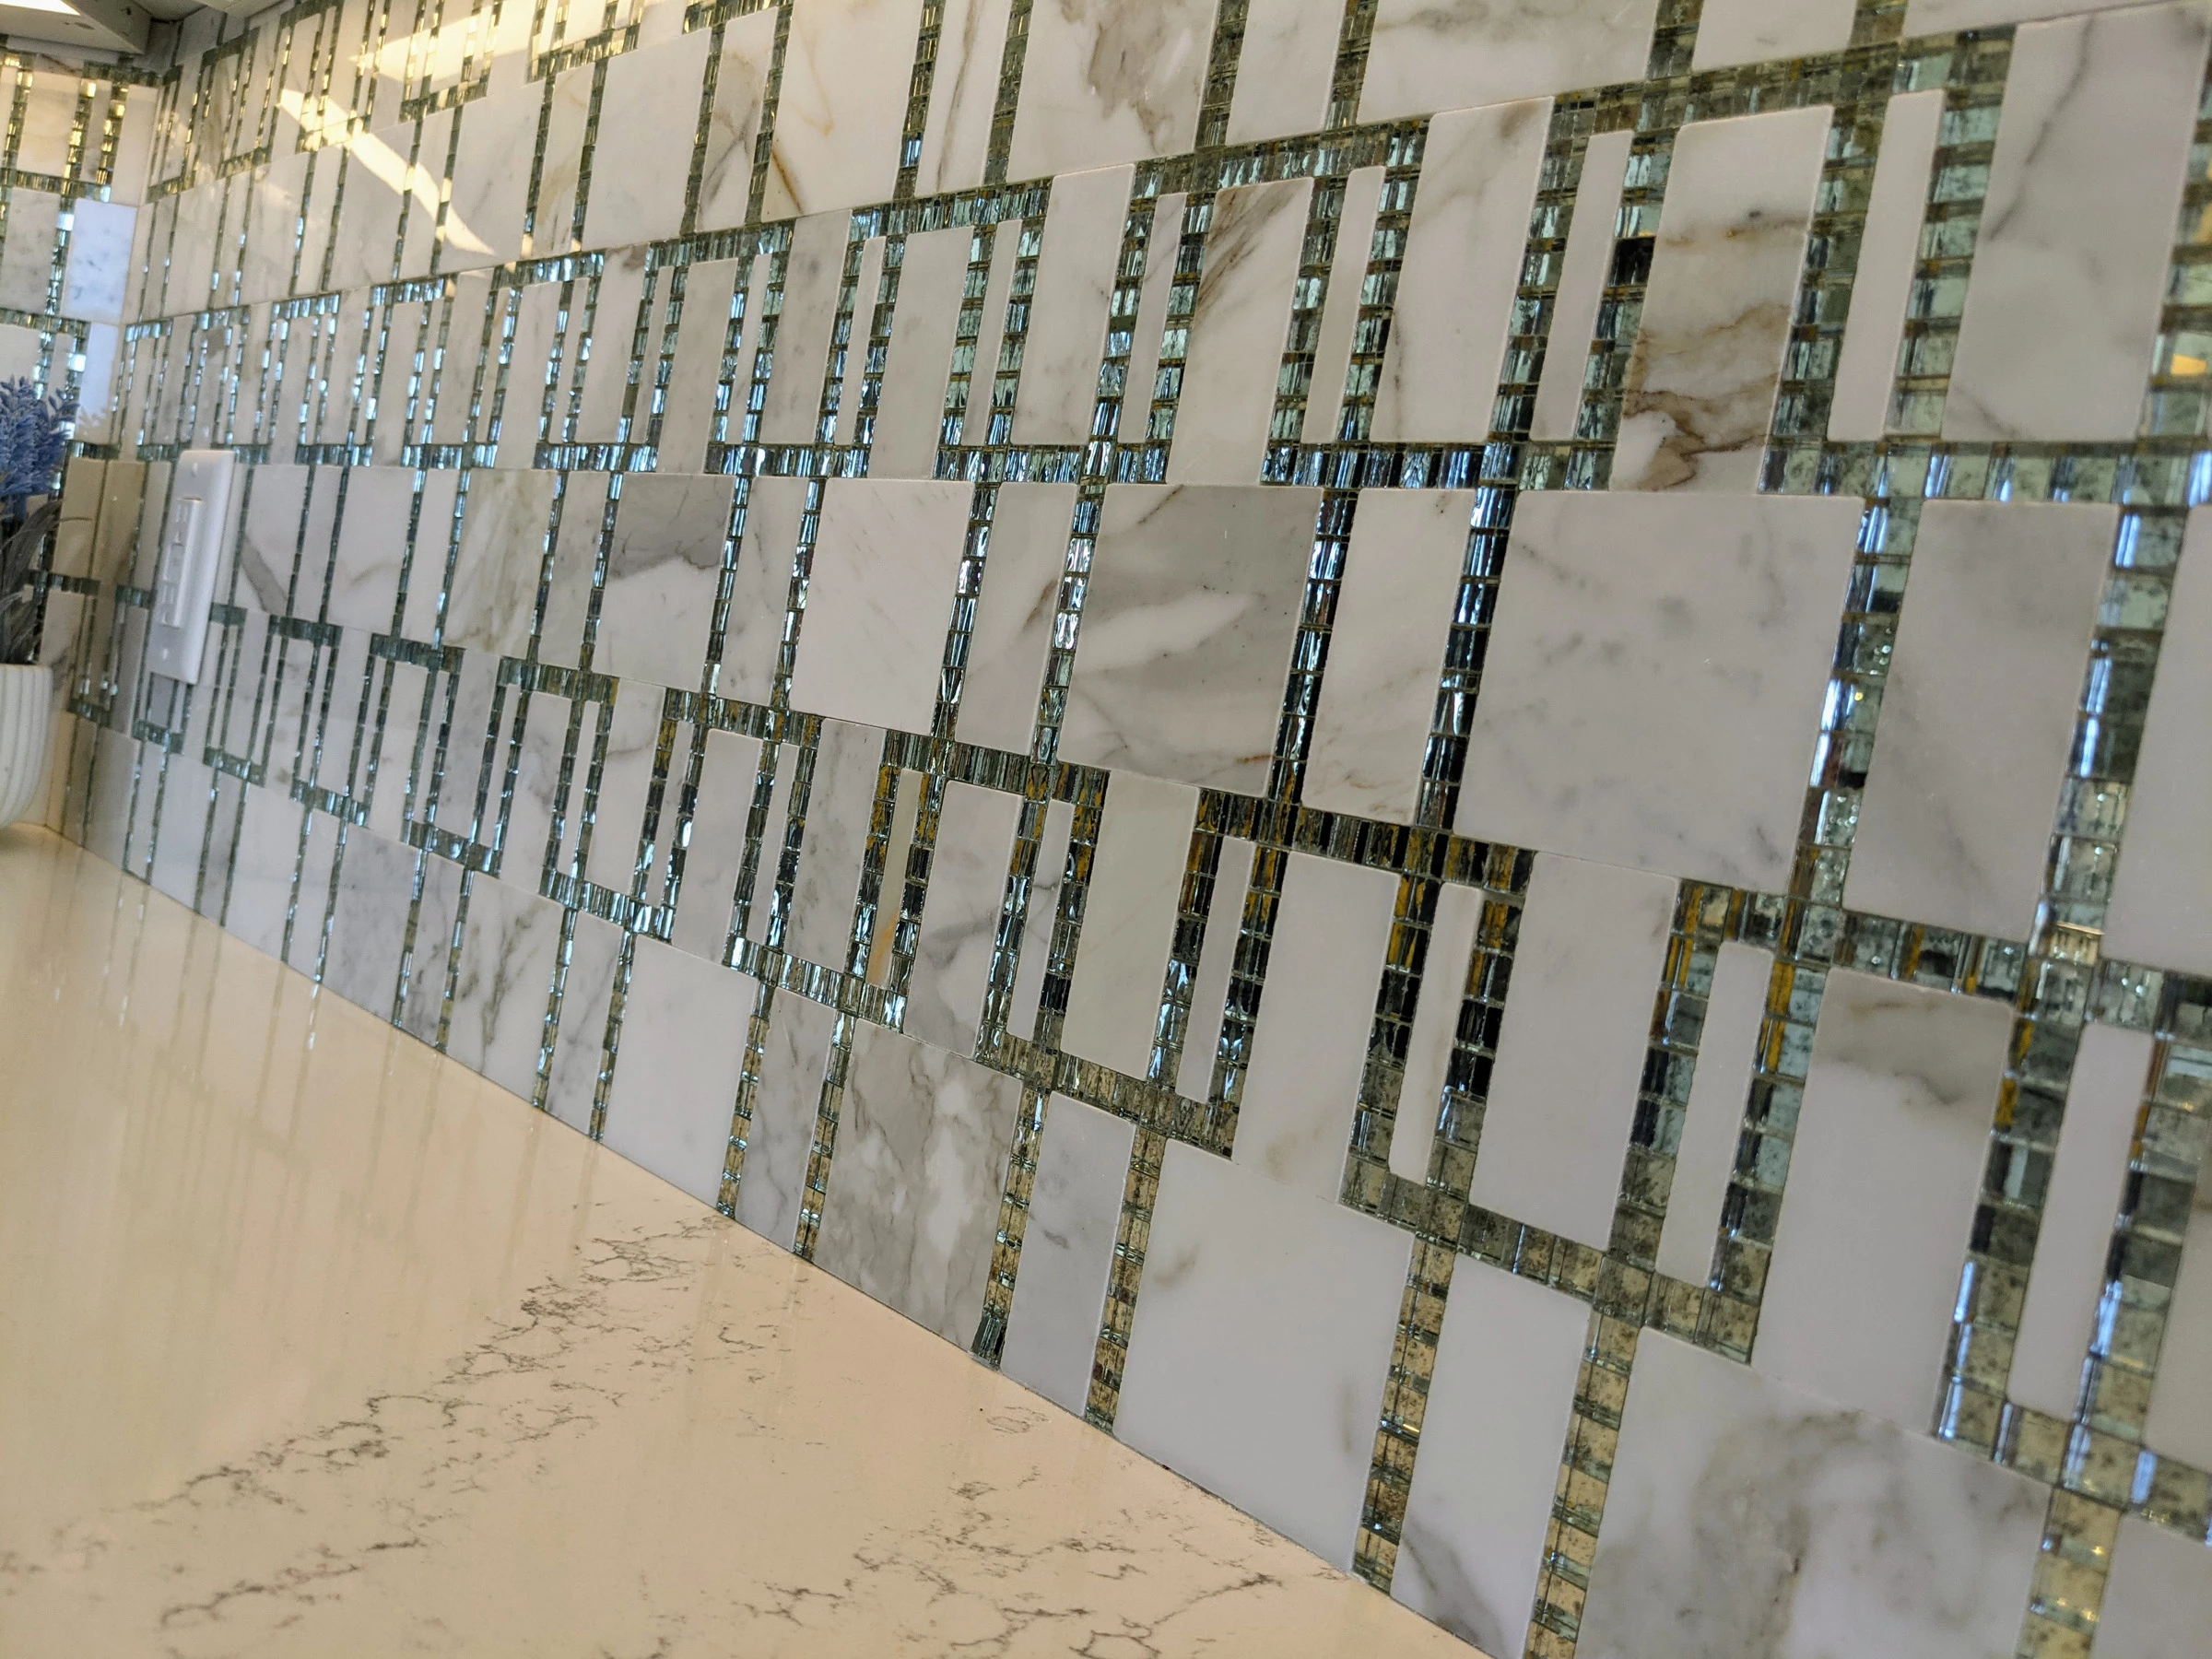 Bling - Mirrored Backsplash Tile